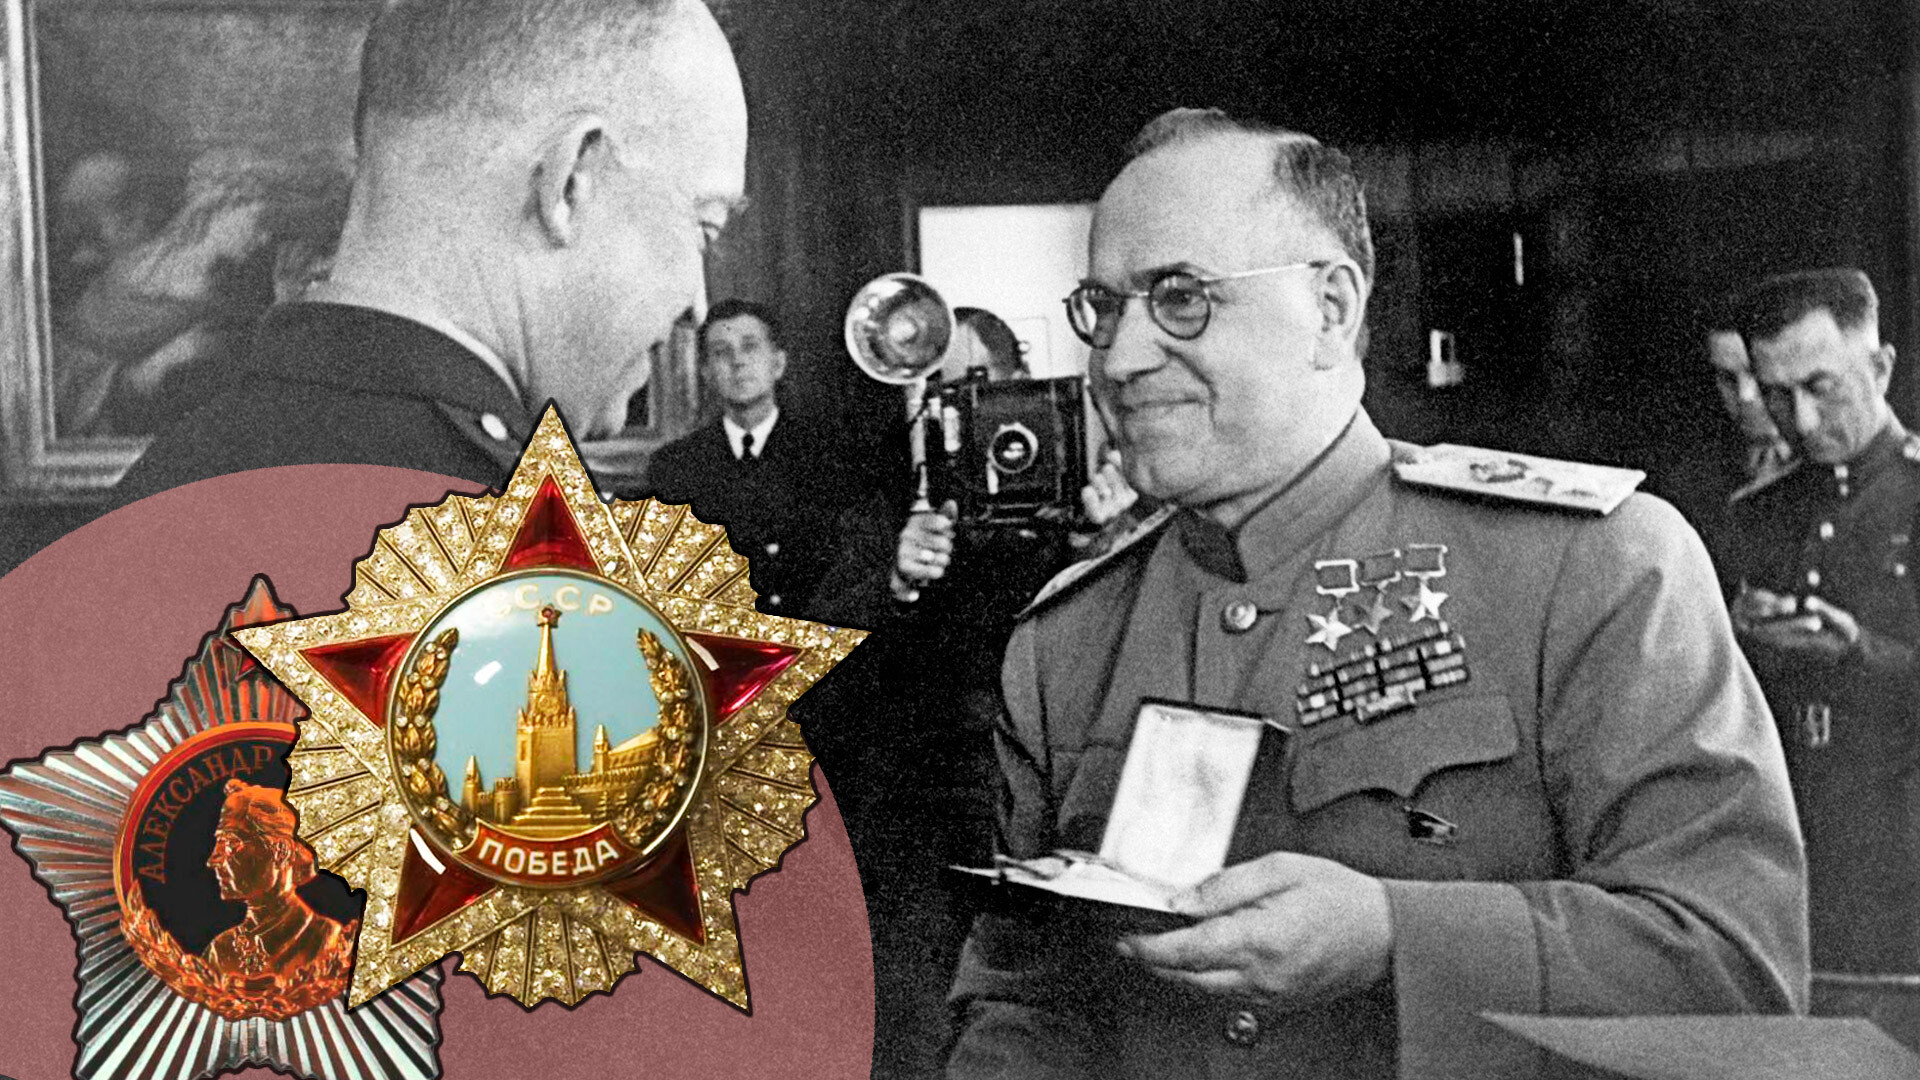 Маршал Советского Союза Георгий Жуков вручает орден «Победа» генералу армии США Дуайту Эйзенхауэру в ставке американских войск во Франкфурте-на-Майне в июне 1945 года.